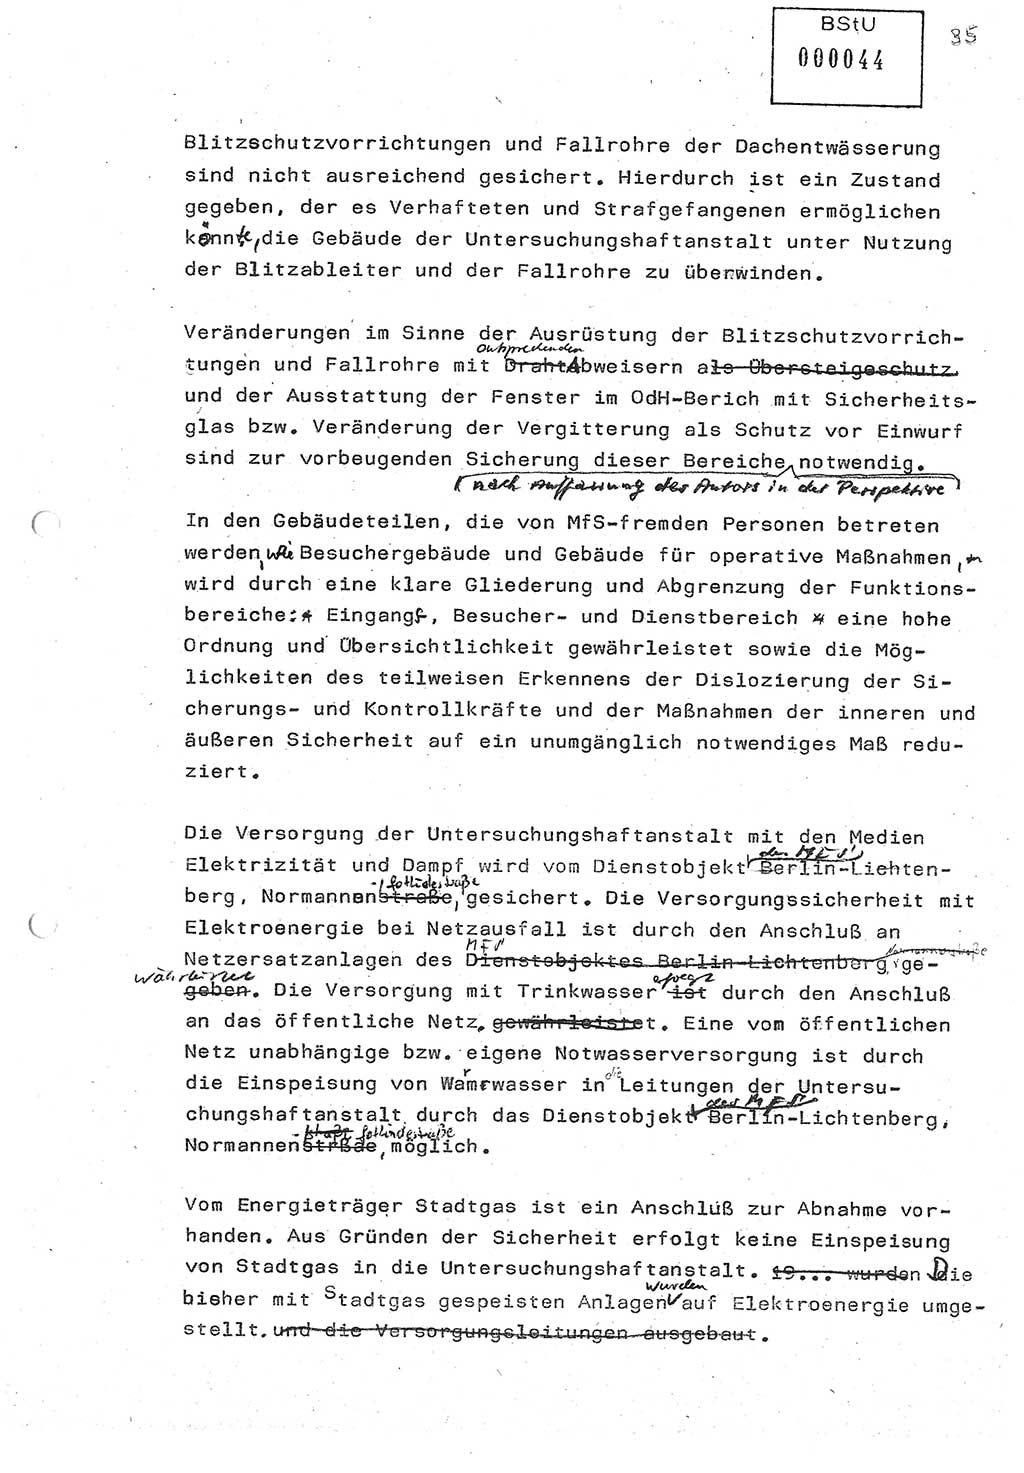 Diplomarbeit (Entwurf) Oberleutnant Peter Parke (Abt. ⅩⅣ), Ministerium für Staatssicherheit (MfS) [Deutsche Demokratische Republik (DDR)], Juristische Hochschule (JHS), Geheime Verschlußsache (GVS) o001-98/86, Potsdam 1986, Seite 44 (Dipl.-Arb. MfS DDR JHS GVS o001-98/86 1986, S. 44)